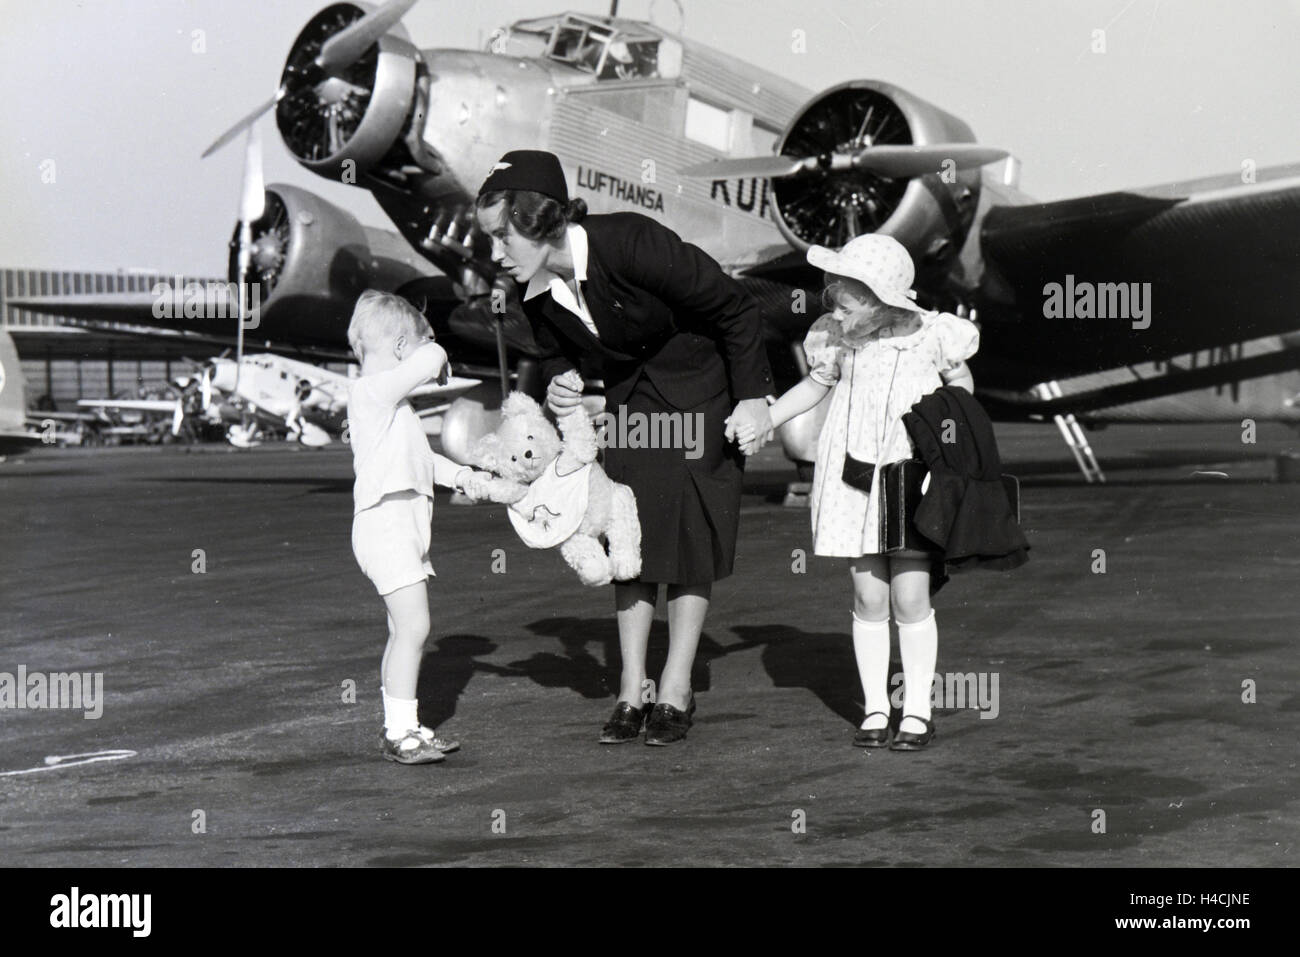 Eine Stewardess fhrt zwei Kinder ber das Flugfeld zum Flugzeug, Deutschland 1930er Jahre. Stewardess leading two children over the airfield to the plane, Germany 1930s Stock Photo